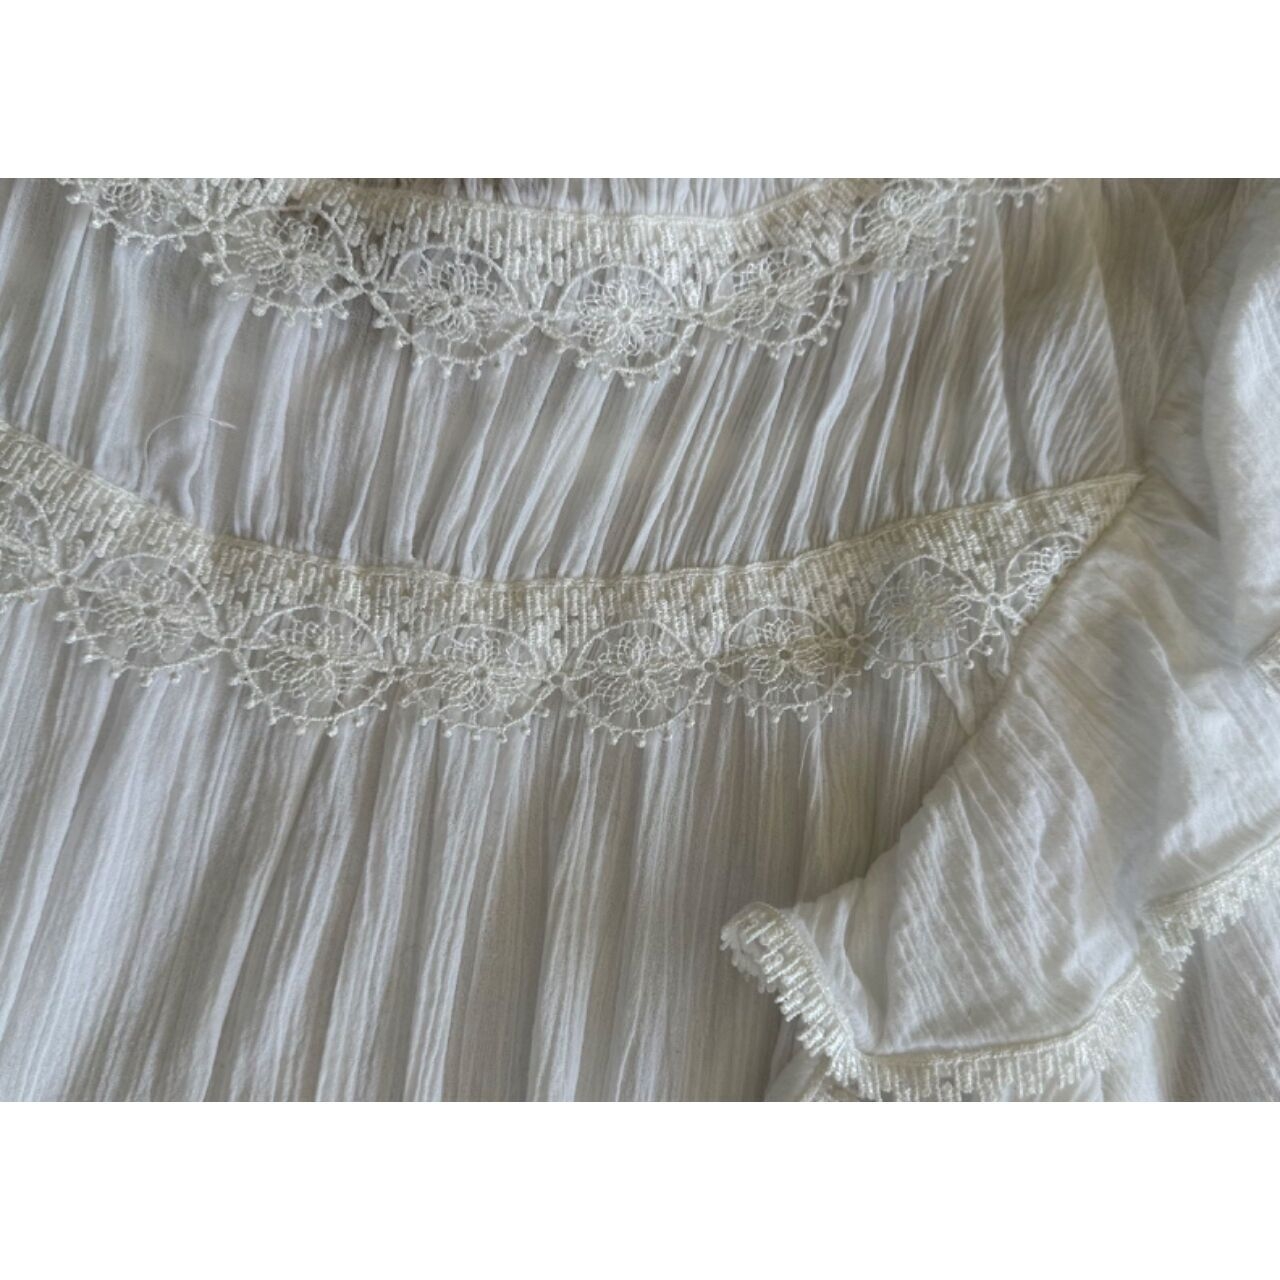 Magali Pascal White Mini Dress